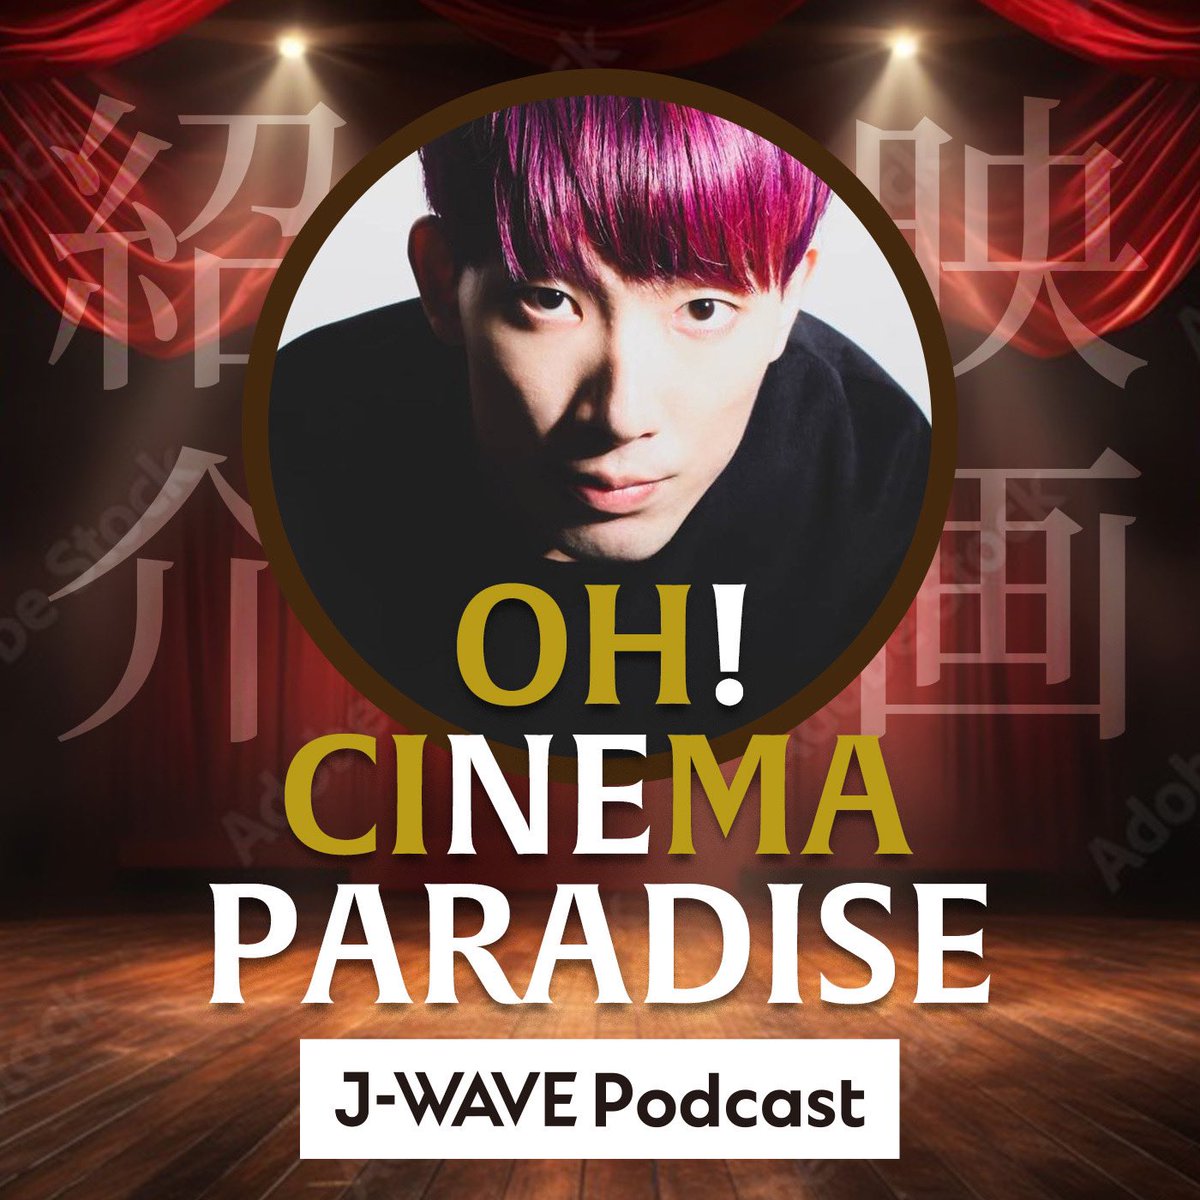 曜日ごとに登場するクリエイターの
Podcastの一部をお届け
🎧HARAJUKU CAST🍵

水曜日はお笑いコンビXXCLUBの
#大島育宙 さんによる
新作と旧作の映画を紹介していく
「OH! CINEMA PARADISE」🎞️
@zyasuoki 

🔗radiko.jp/share/?t=20240…  

#マーキー813 #jwave